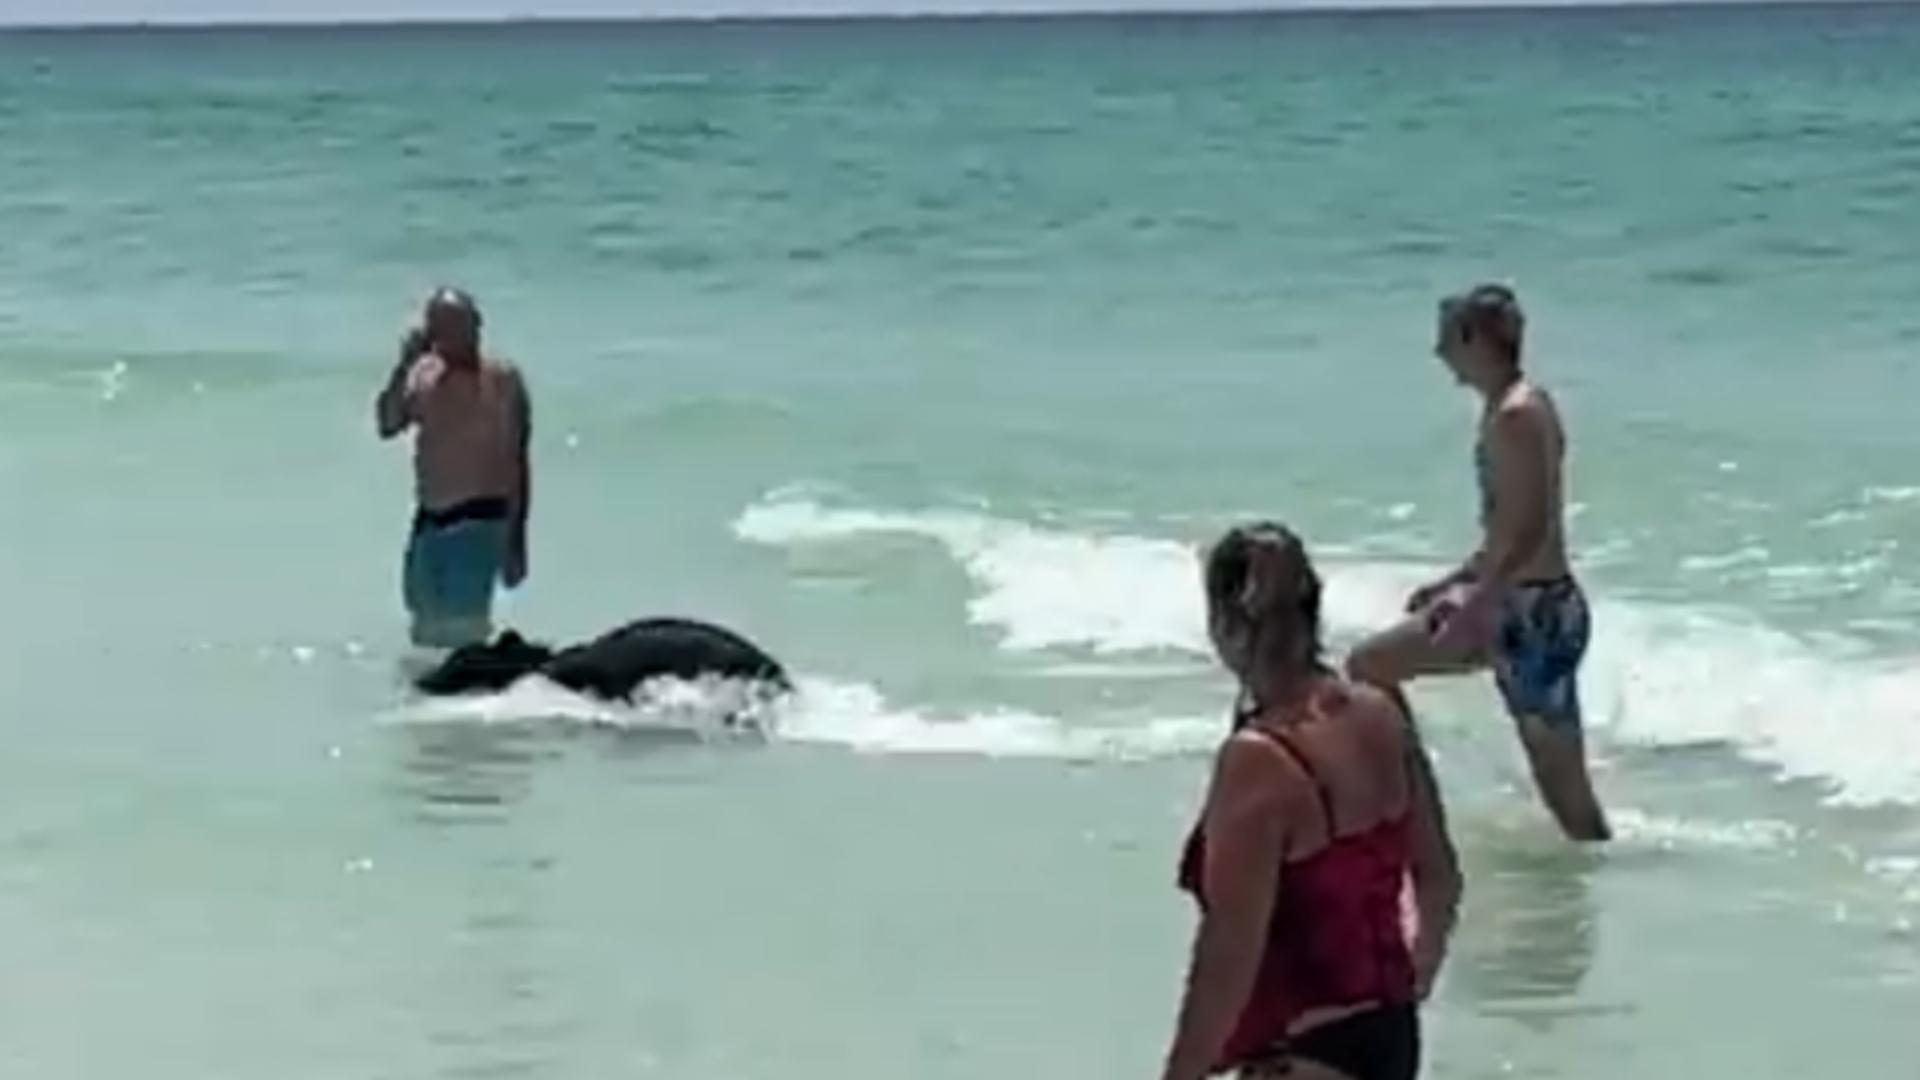 Un urs a înotat în ocean printre oameni. Apoi s-a plimbat pe plajă printre turiștii amuzați de prezență. VIDEO